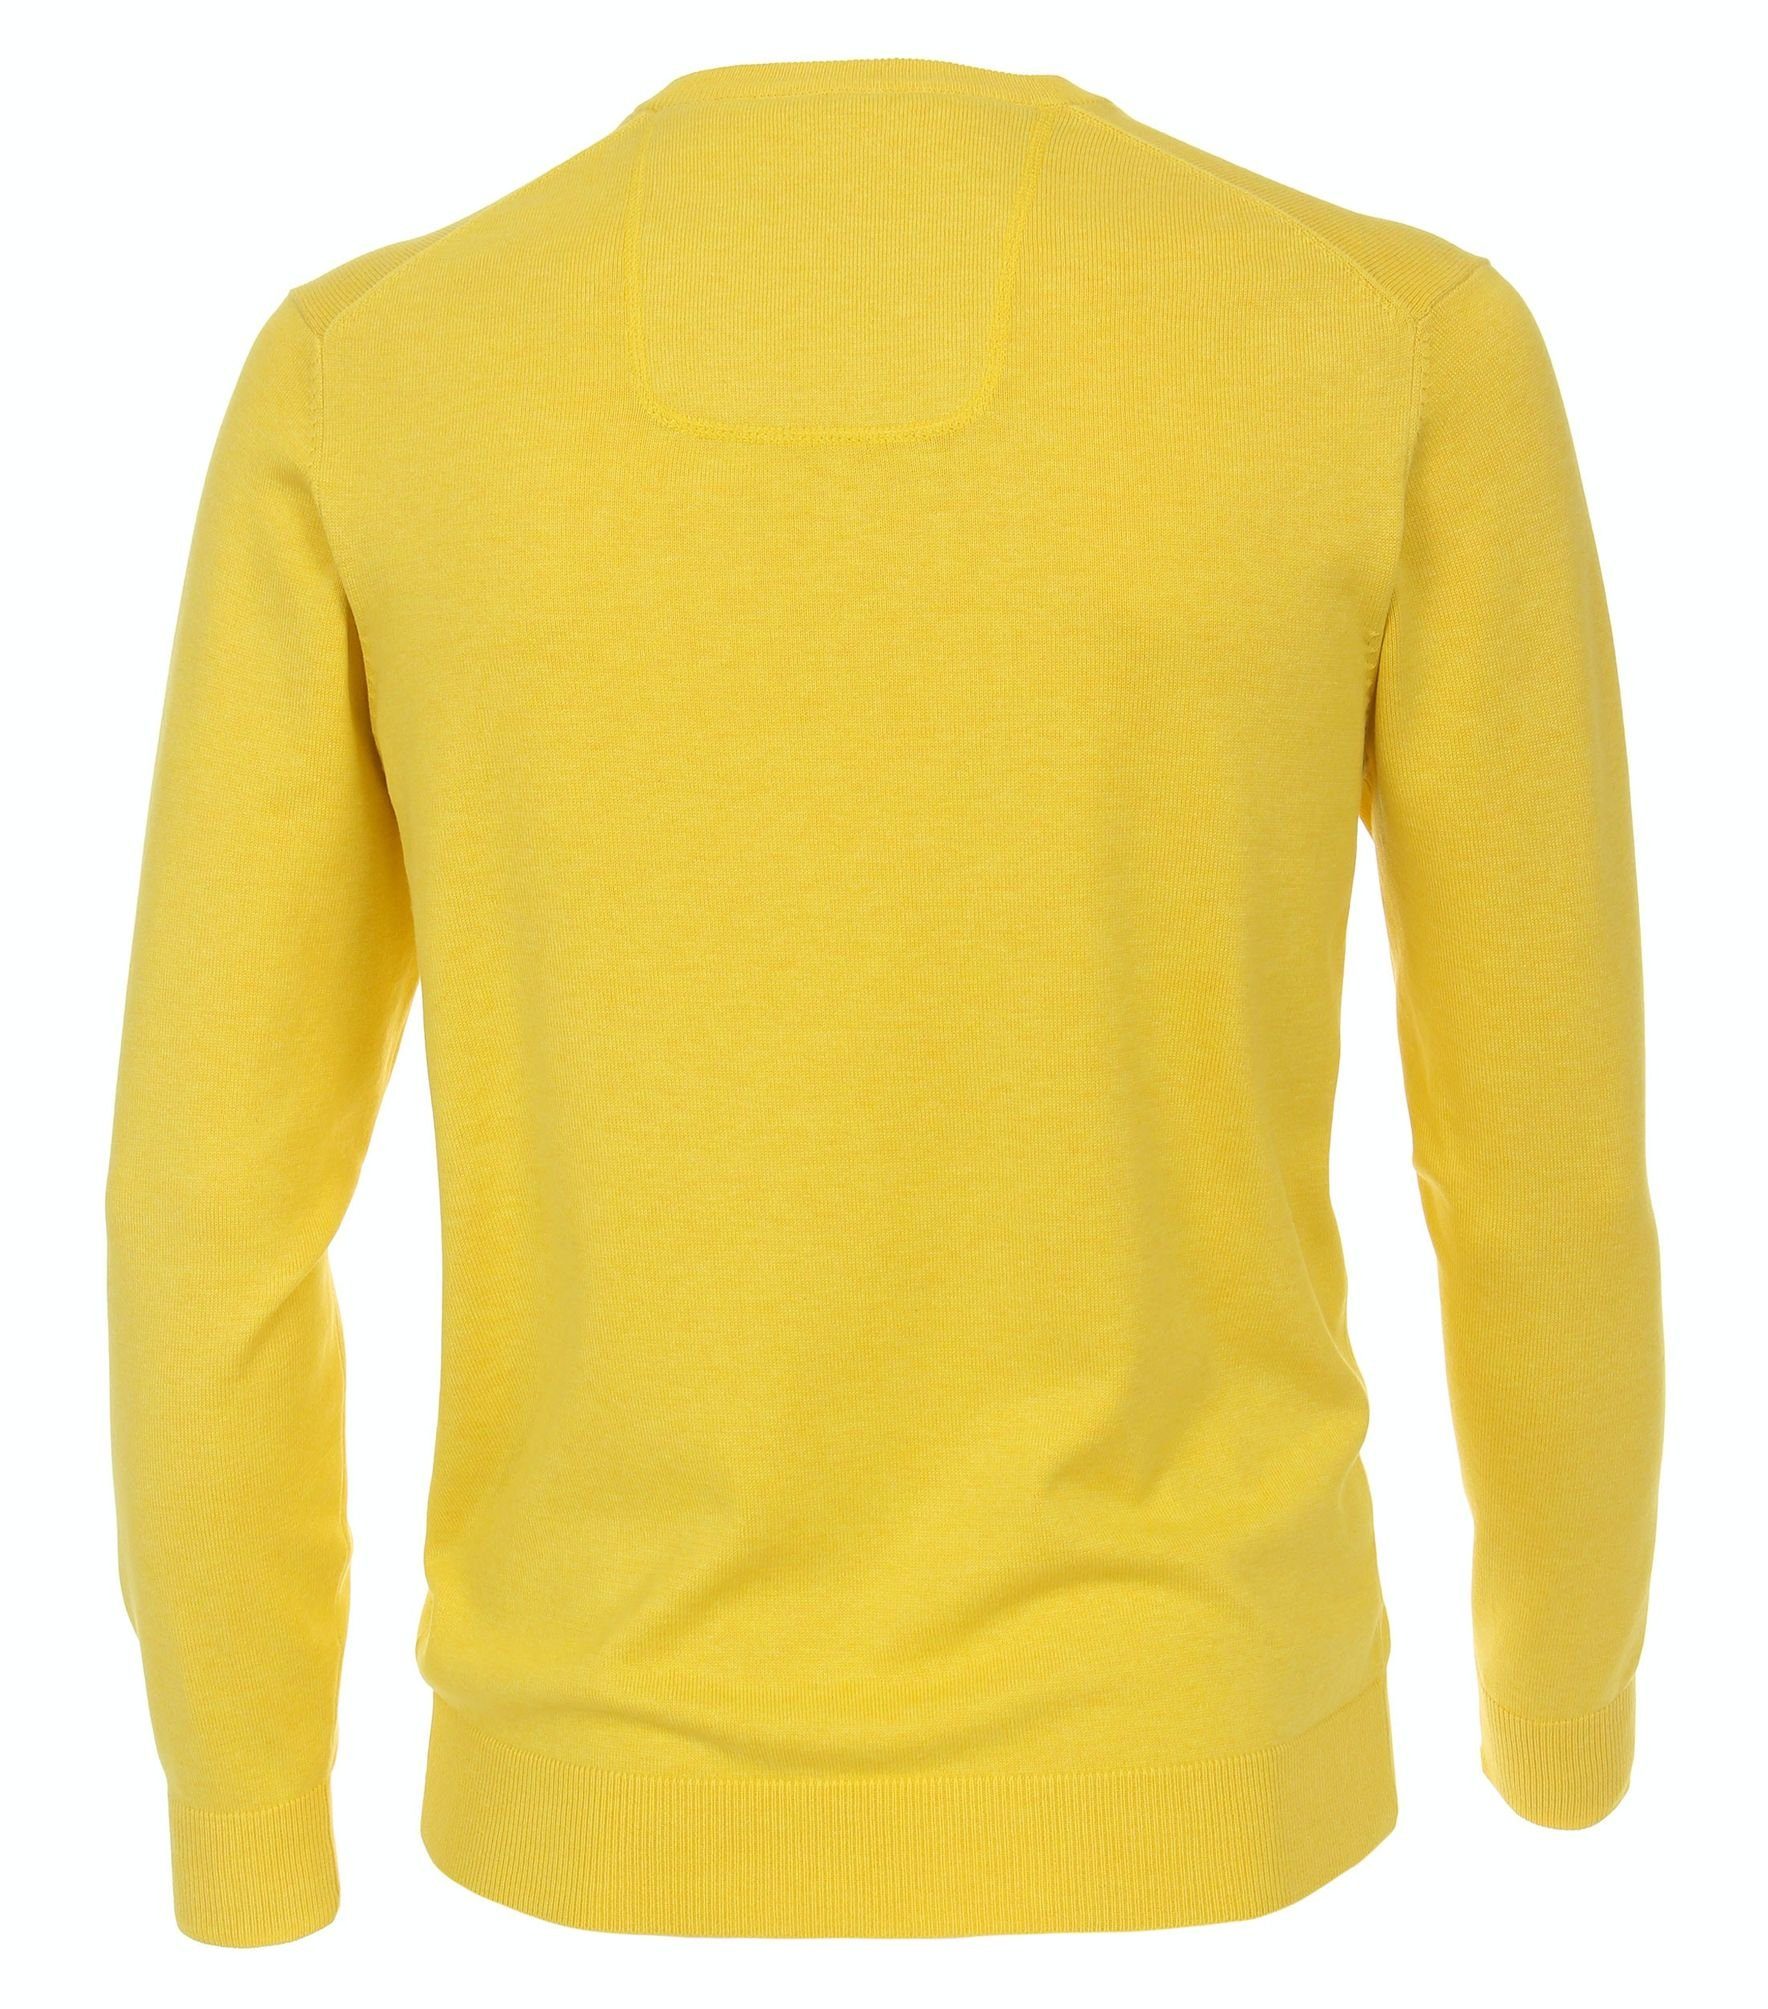 004430 PIMA-Baumwolle gelb CASAMODA V-Ausschnitt-Pullover (536)